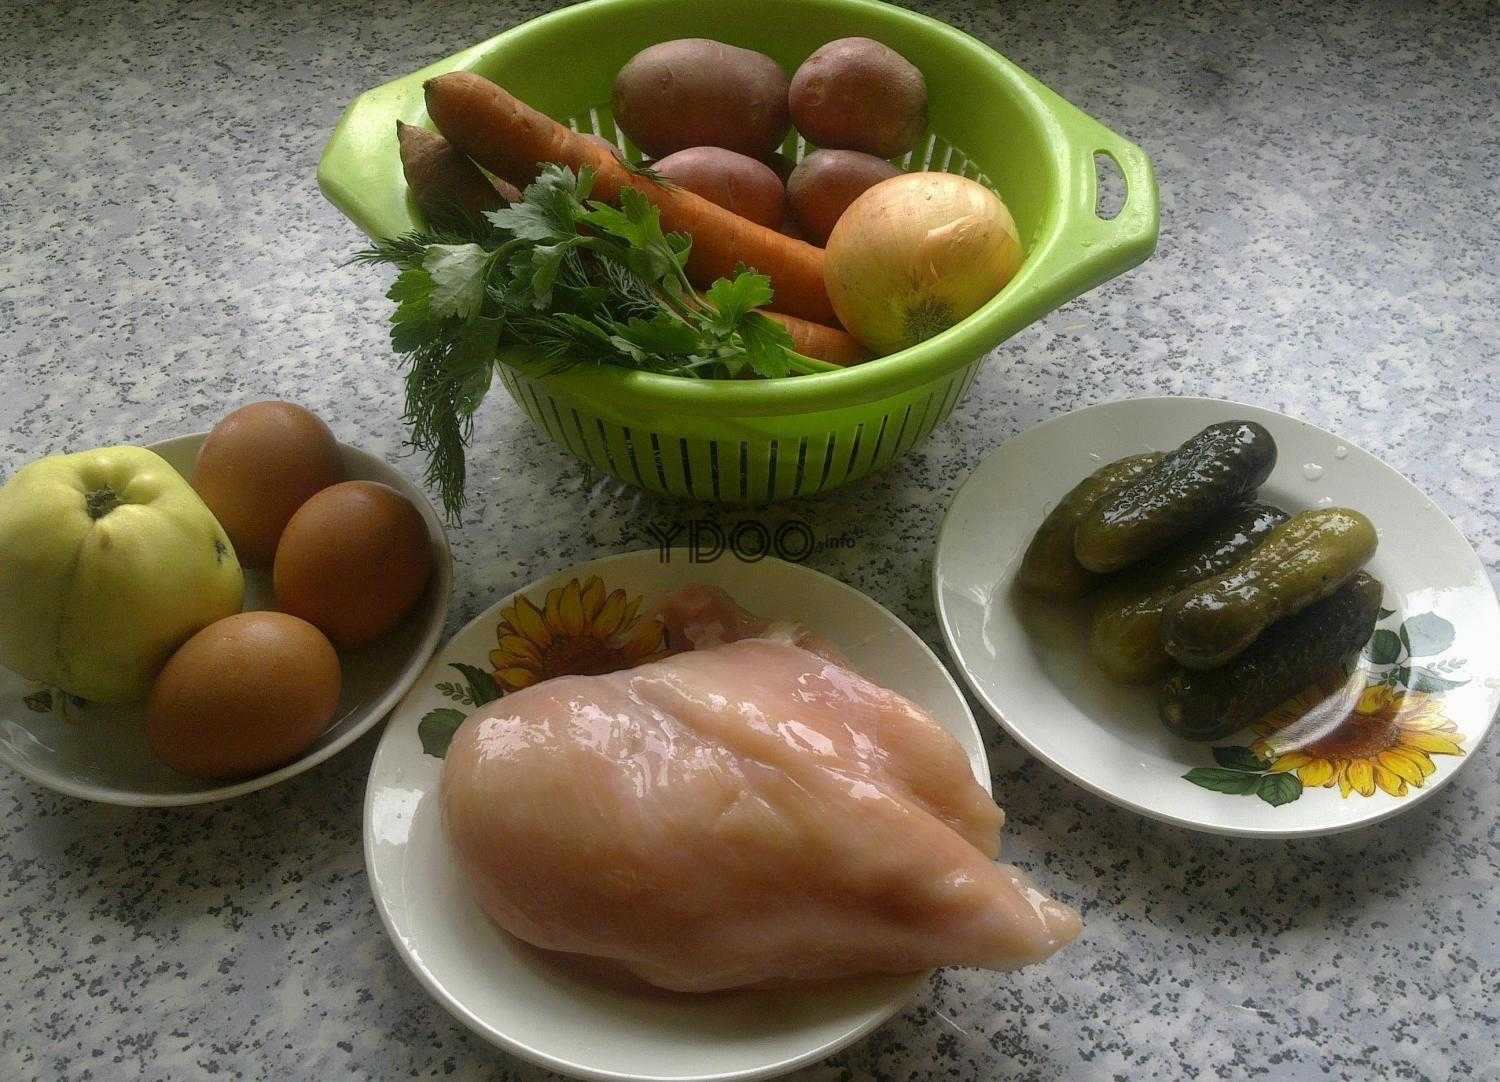 на столе стоит зеленый дуршлаг внутри лежат две морковки, репчатый лук, картофель и зелень, рядом на тарелке лежат соленые огурцы, рядом на тарелке лежит куриная грудка, рядом на блюдце лежит три куриных яйца и яблоко